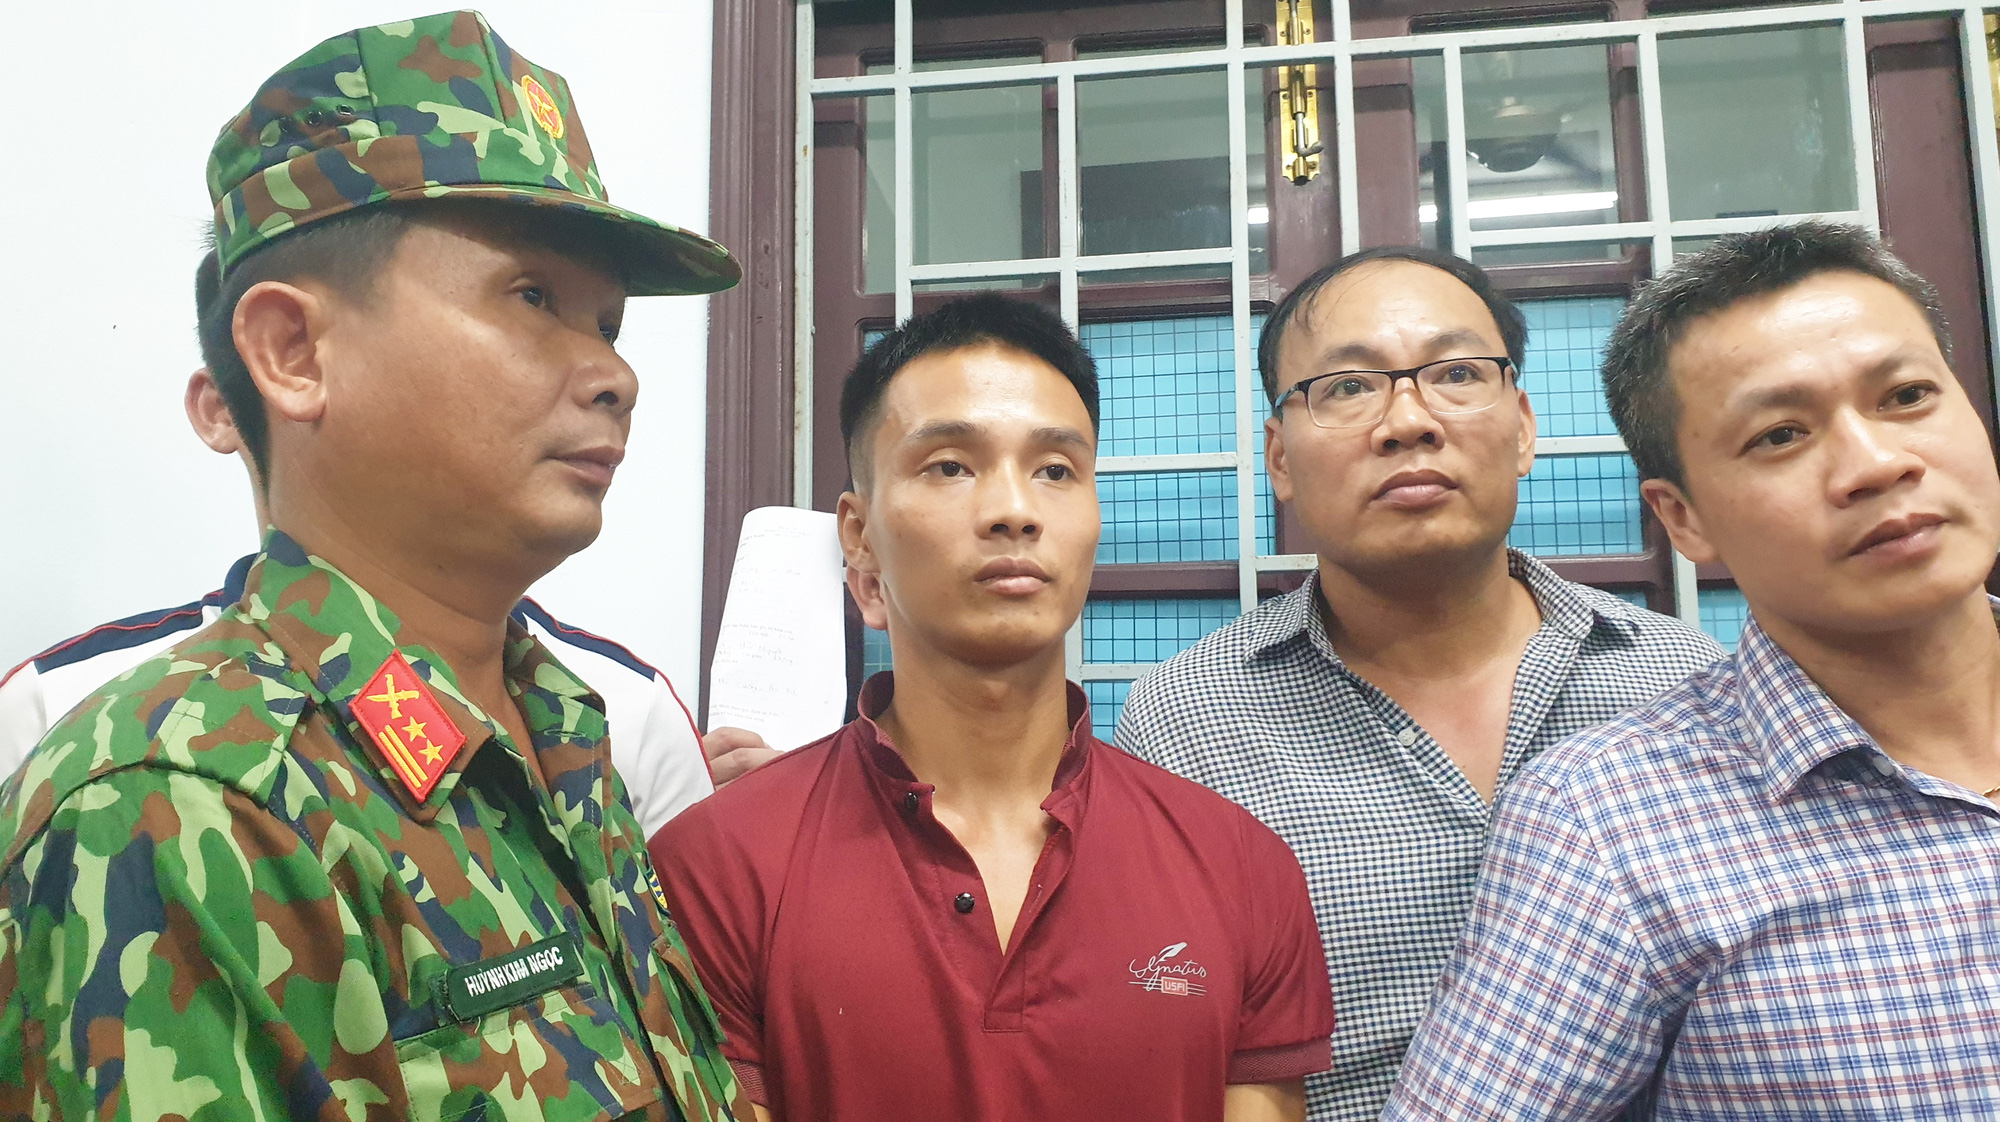 Murder convict captured after second prison break in central Vietnam